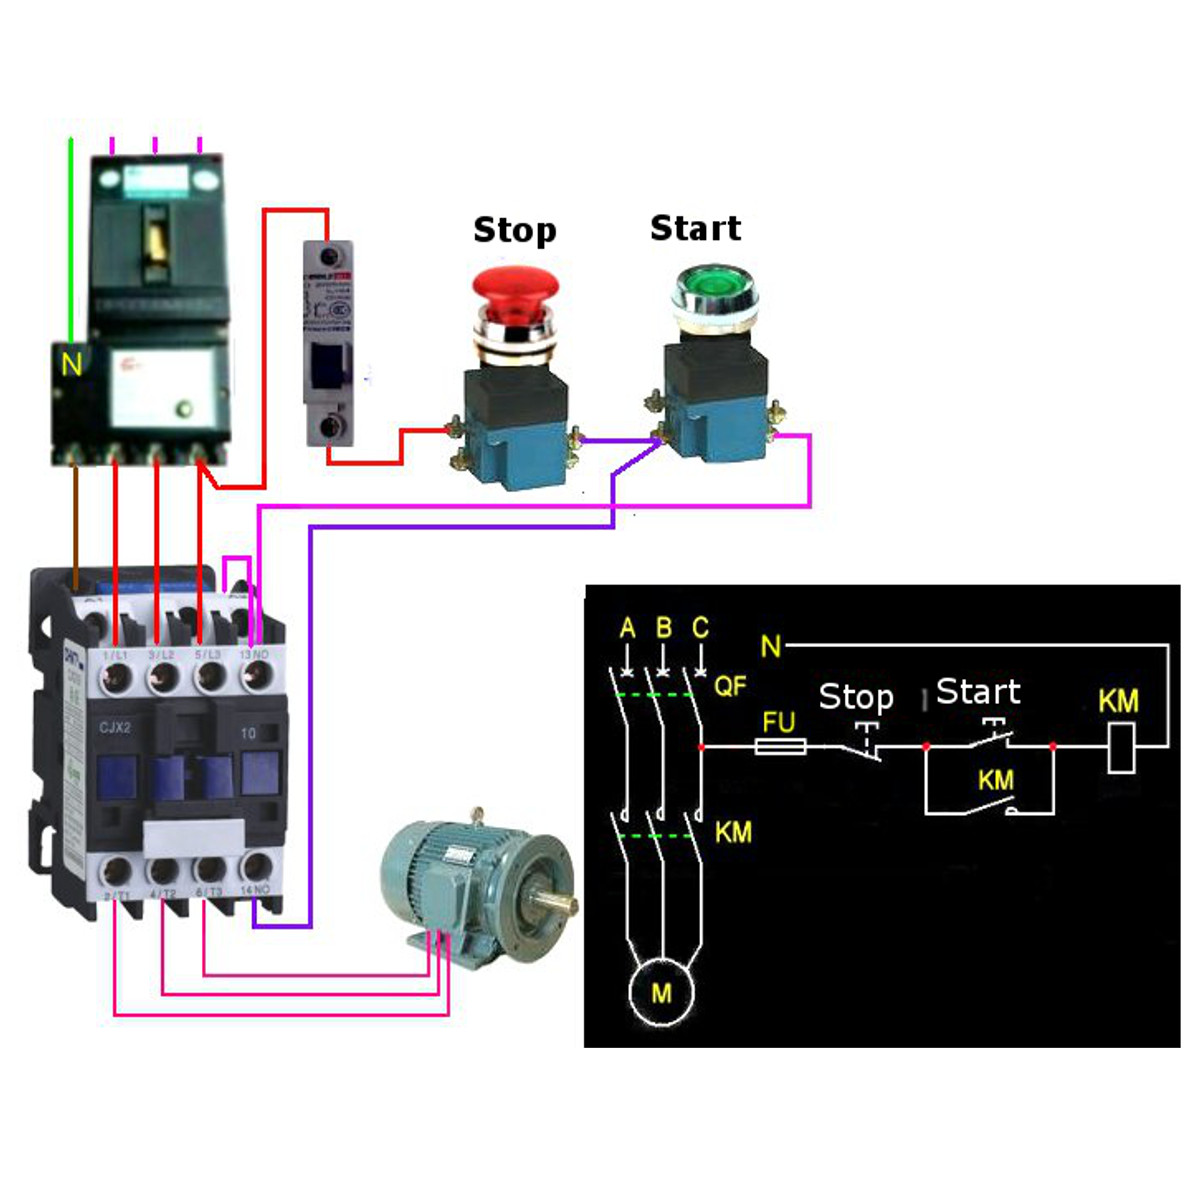 CJX2-1801 AC 220V/380V 18A Contactor Motor Starter Relay 3 ... 220 volt magnetic starter wiring diagram 